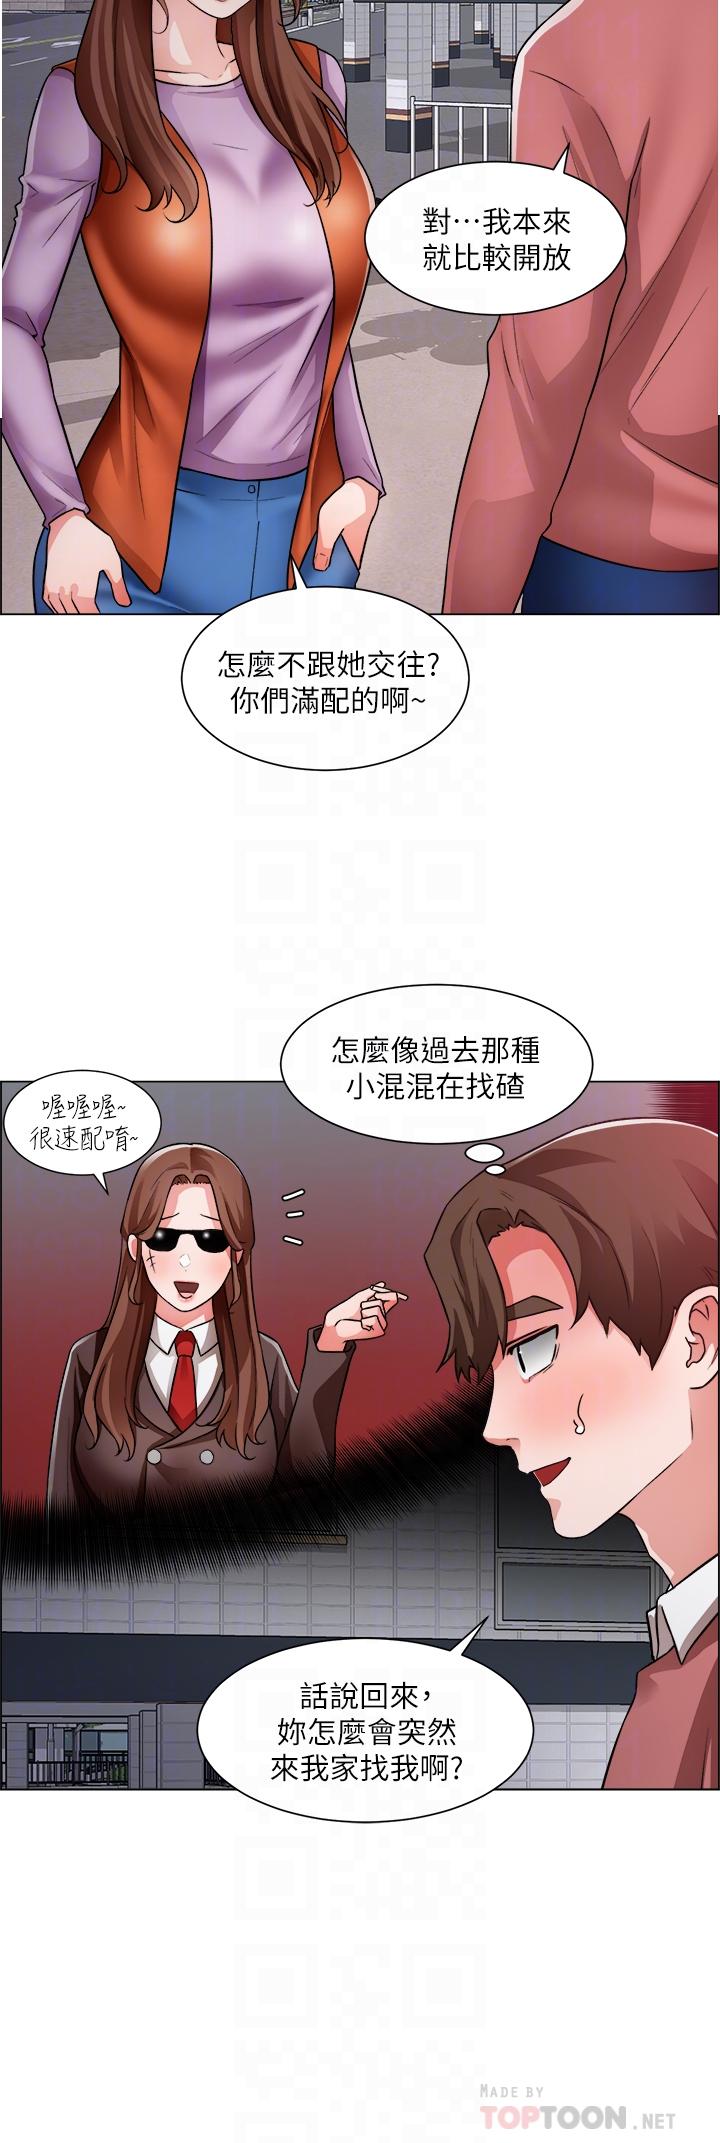 《诚徵粗工》漫画 第38话-姐姐火辣的诱惑